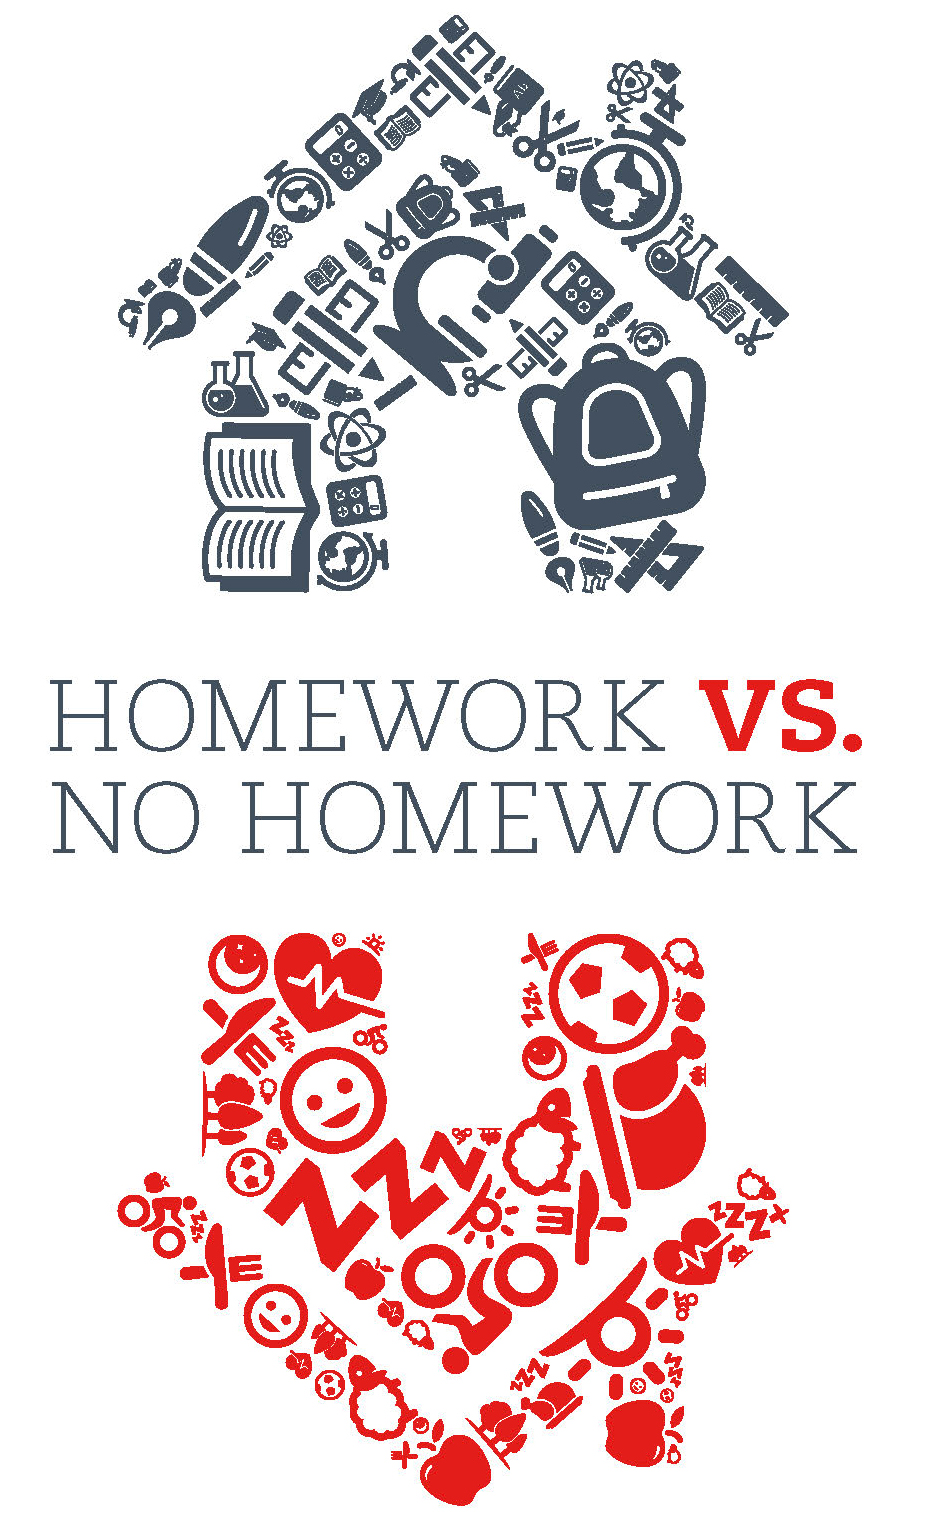 homework vs no homework